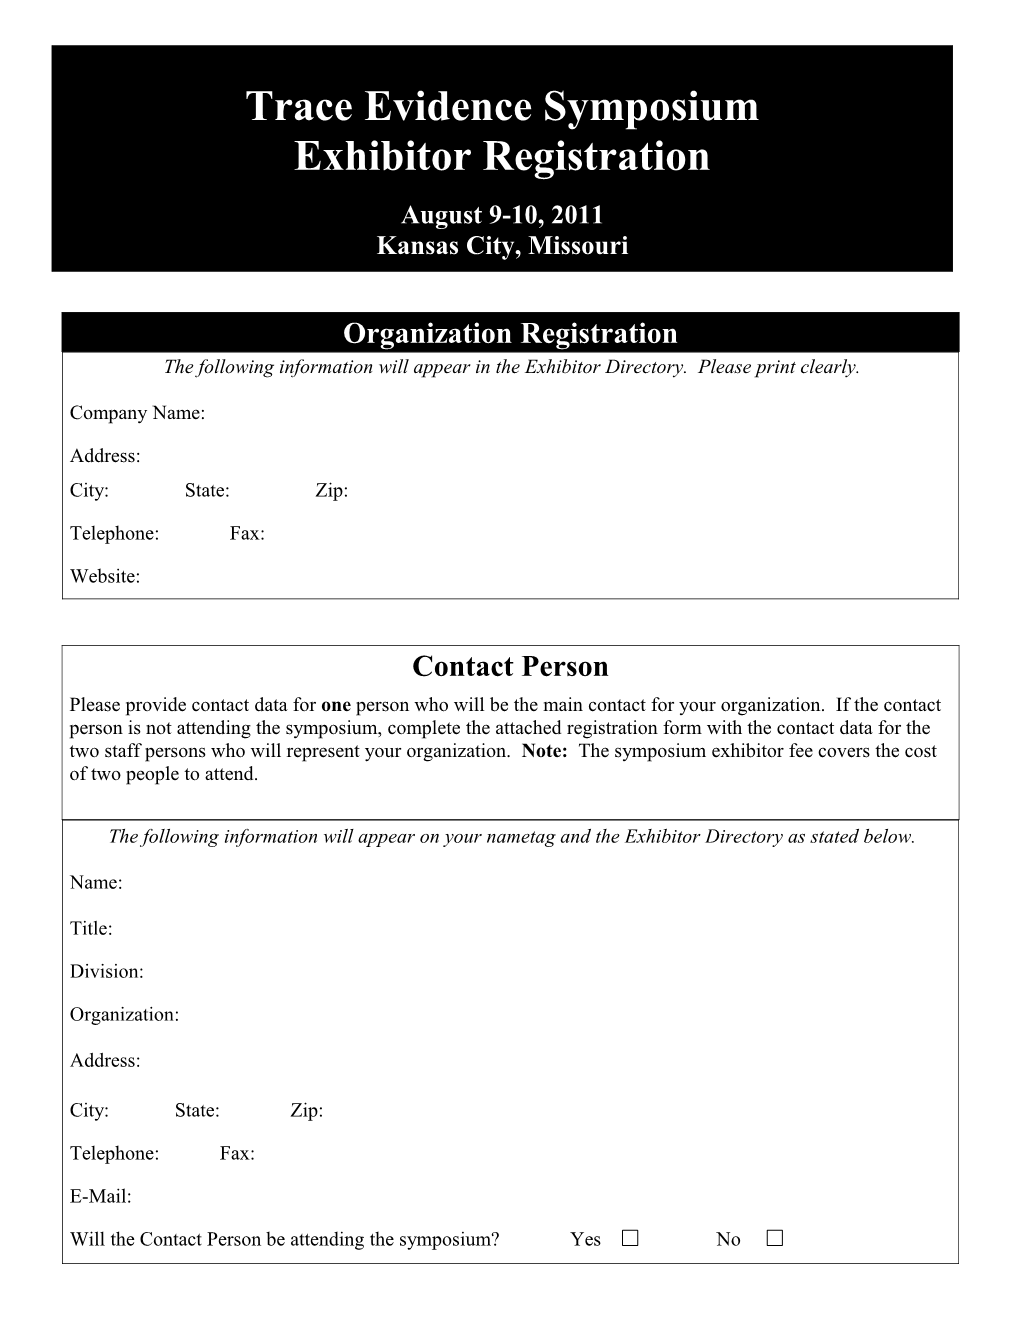 Organization Registration